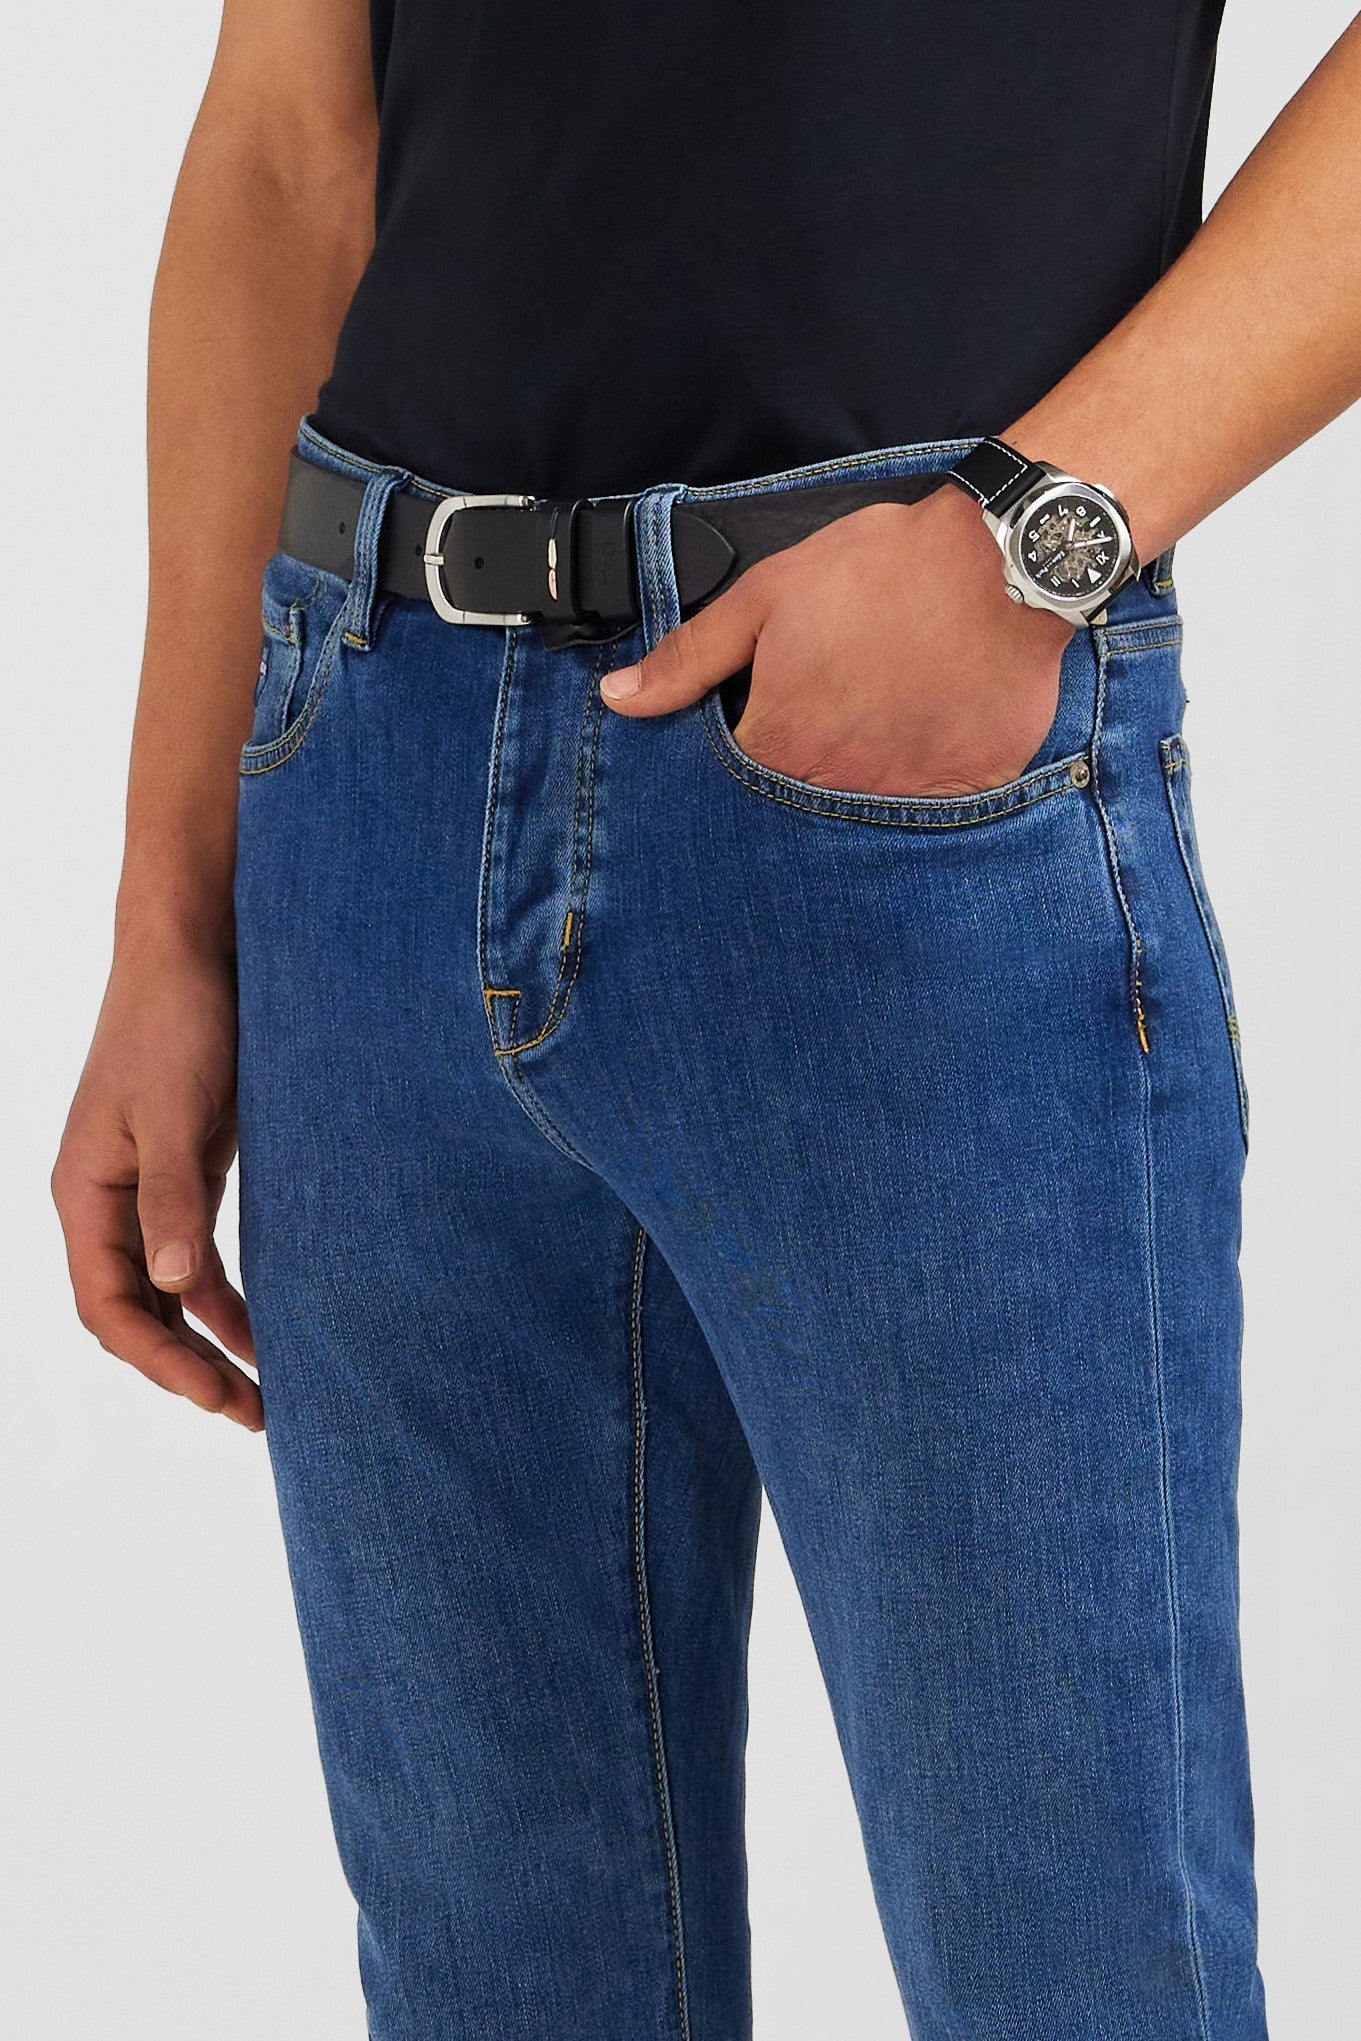 Jean bleu en coton stretch - Image 5